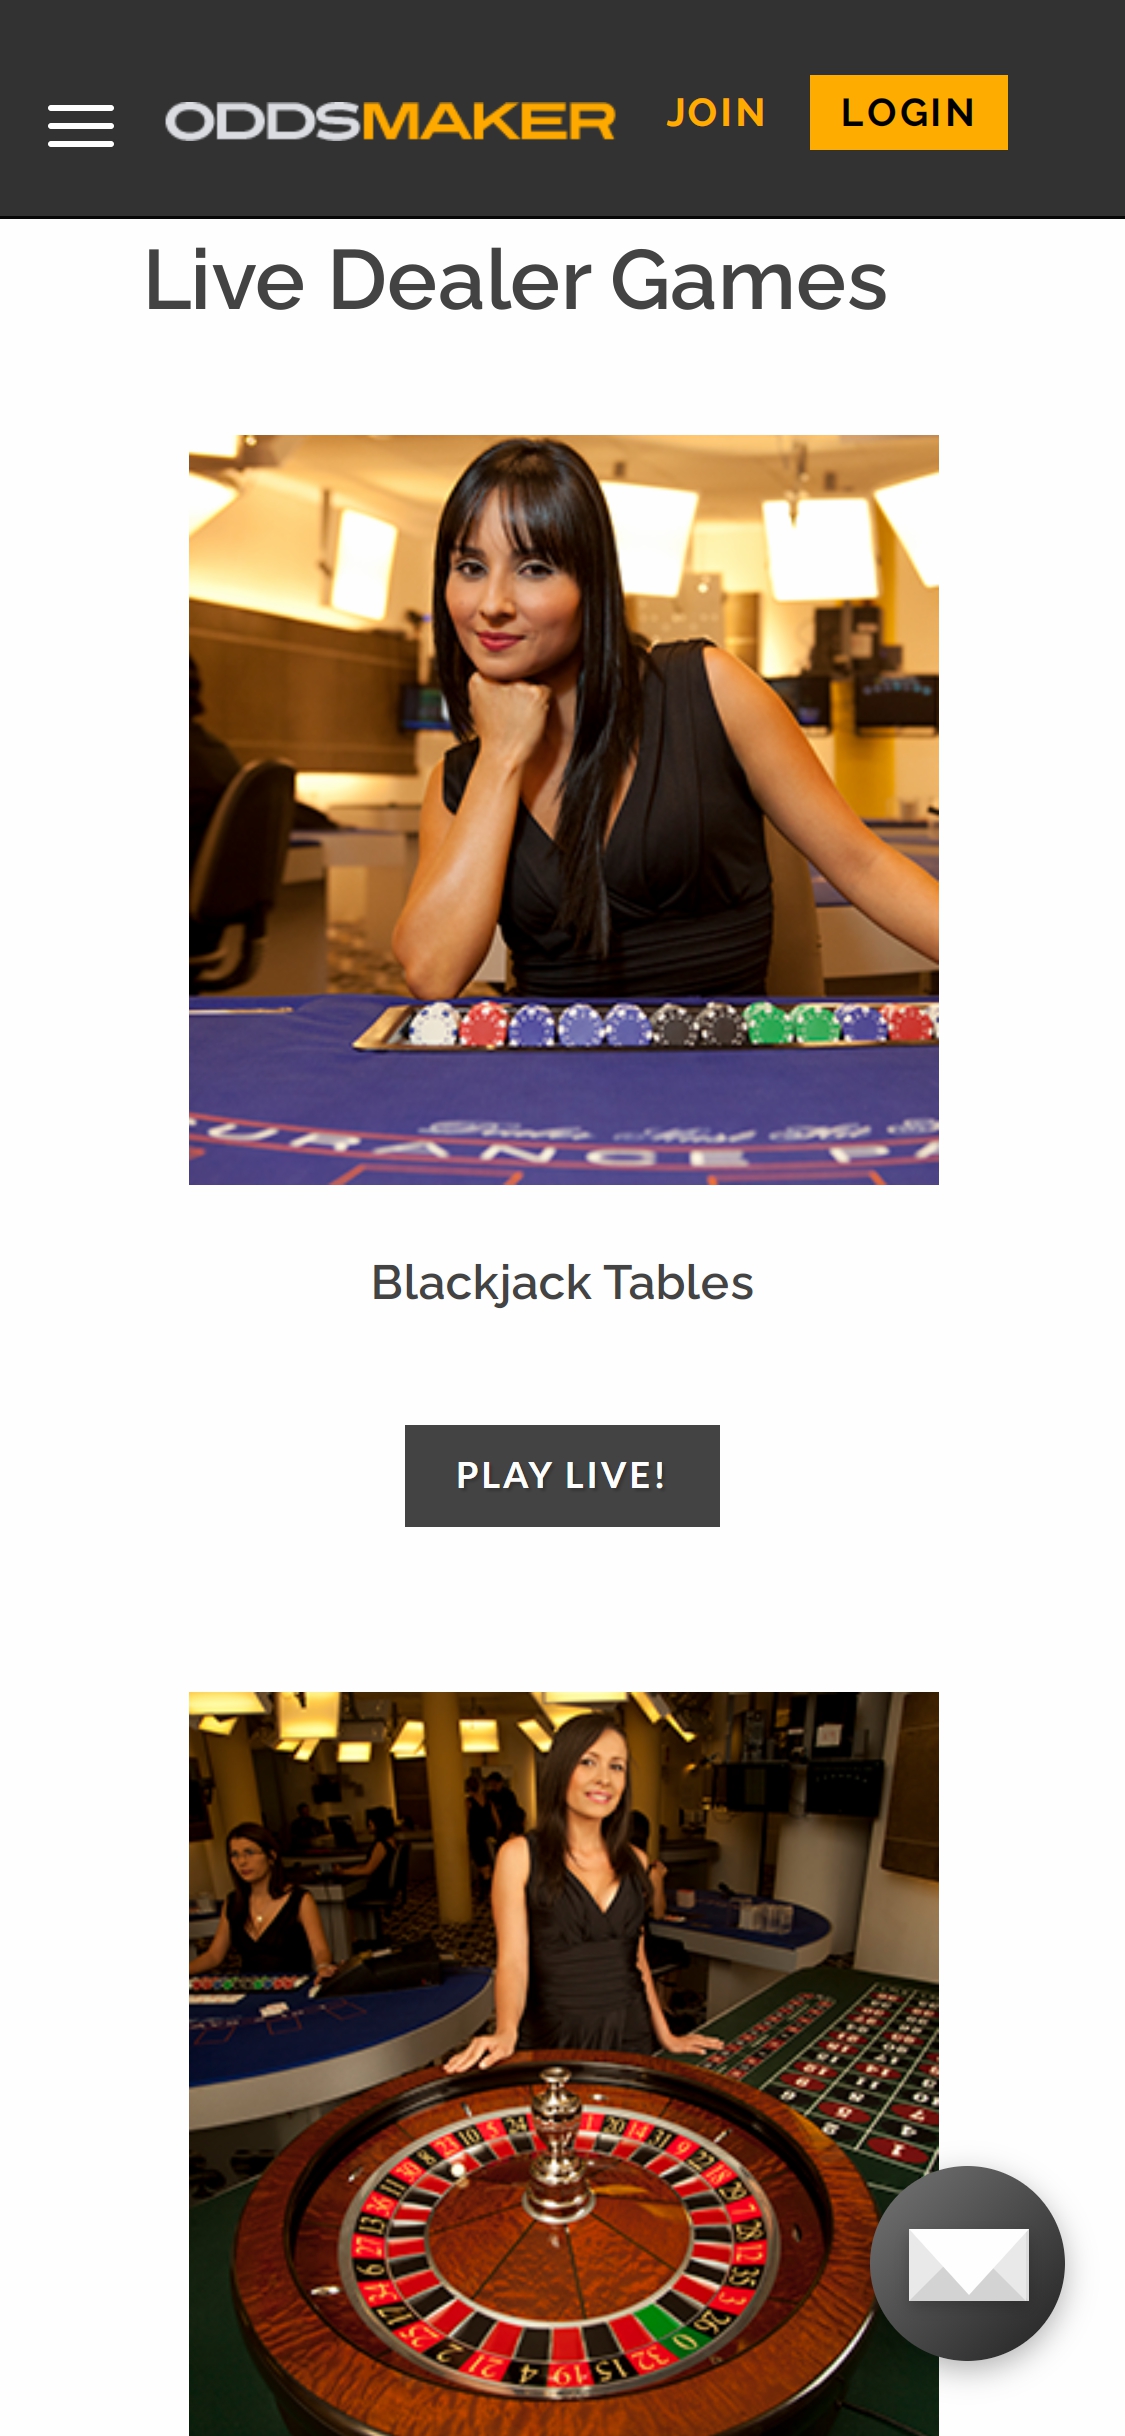 Odds Maker Casino Mobile Live Dealer Games Review